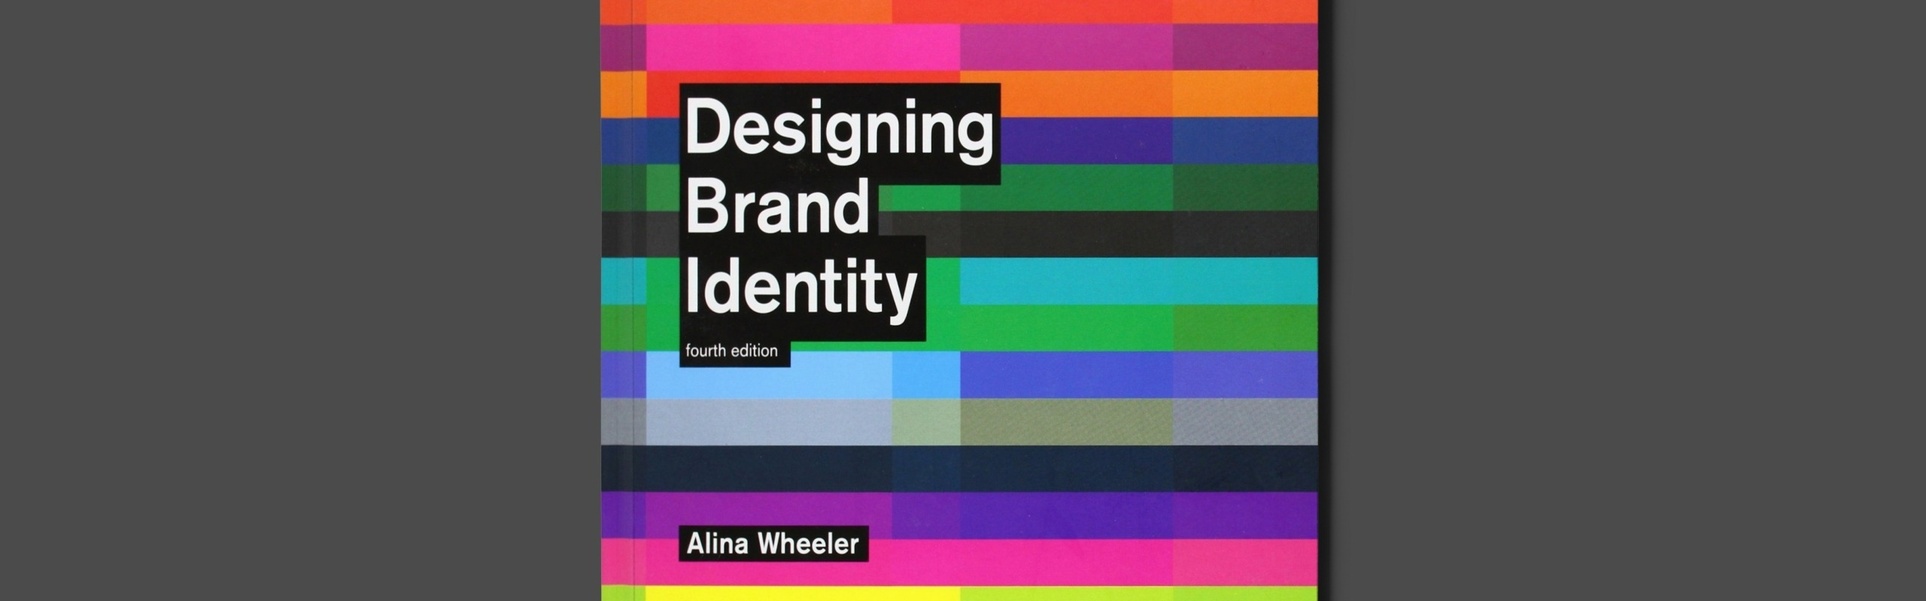 Projetando a identidade da marca: um guia essencial para toda a equipe de branding